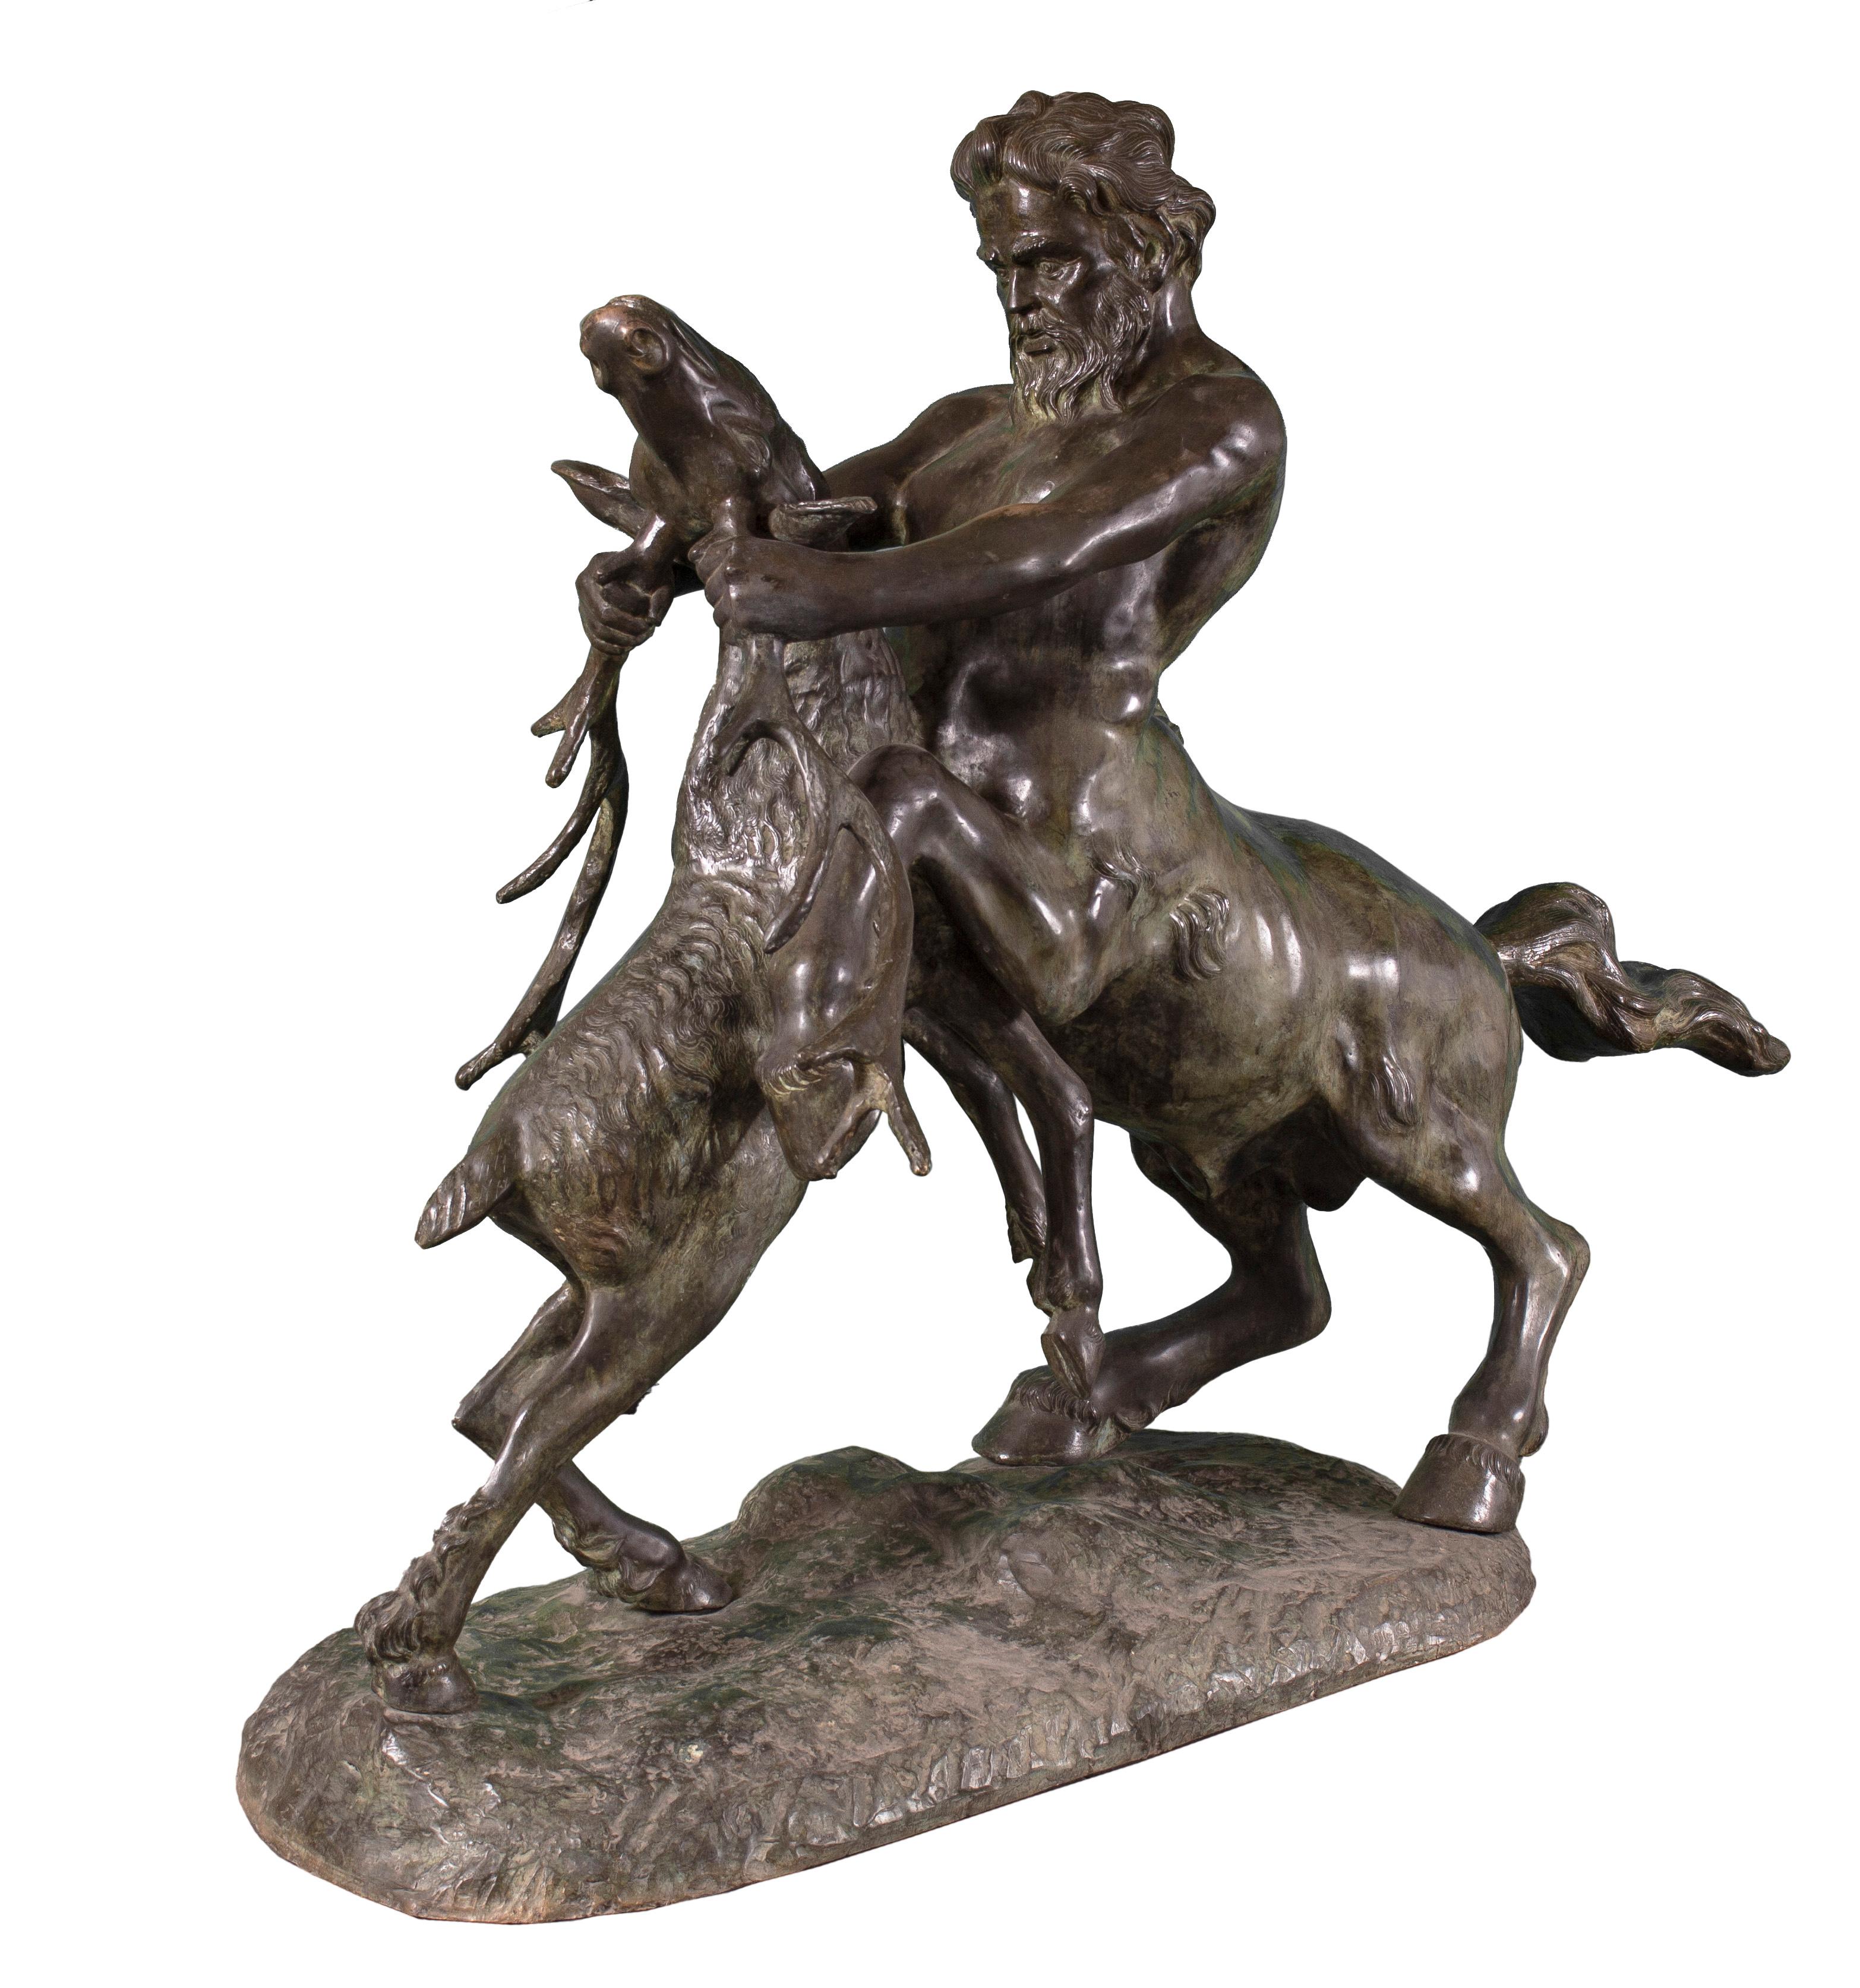 Sculpture en bronze d'excellente qualité. La sculpture est impressionnante et en très bon état, sans défaut. Le combat entre le centaure et le cerf, et la tension qui règne entre eux, sont représentés de manière réaliste dans la sculpture.